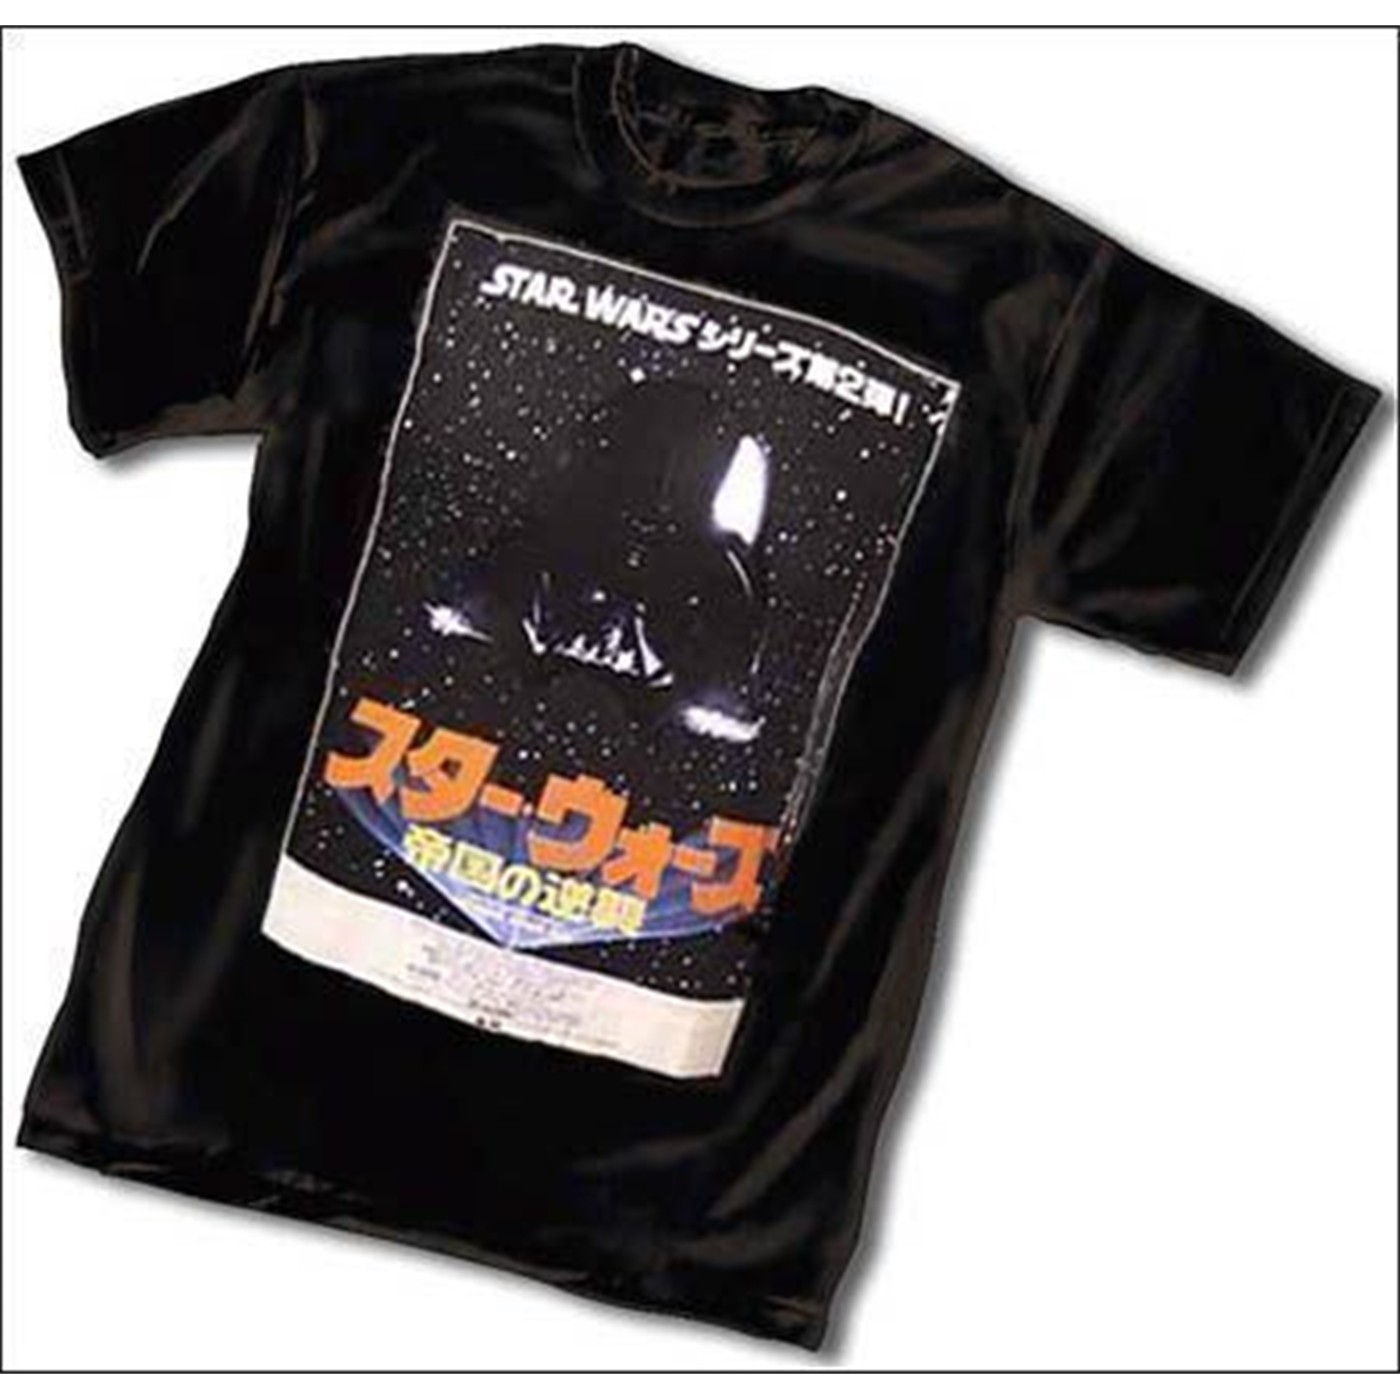 Darth Vader Japanese Poster T-shirt